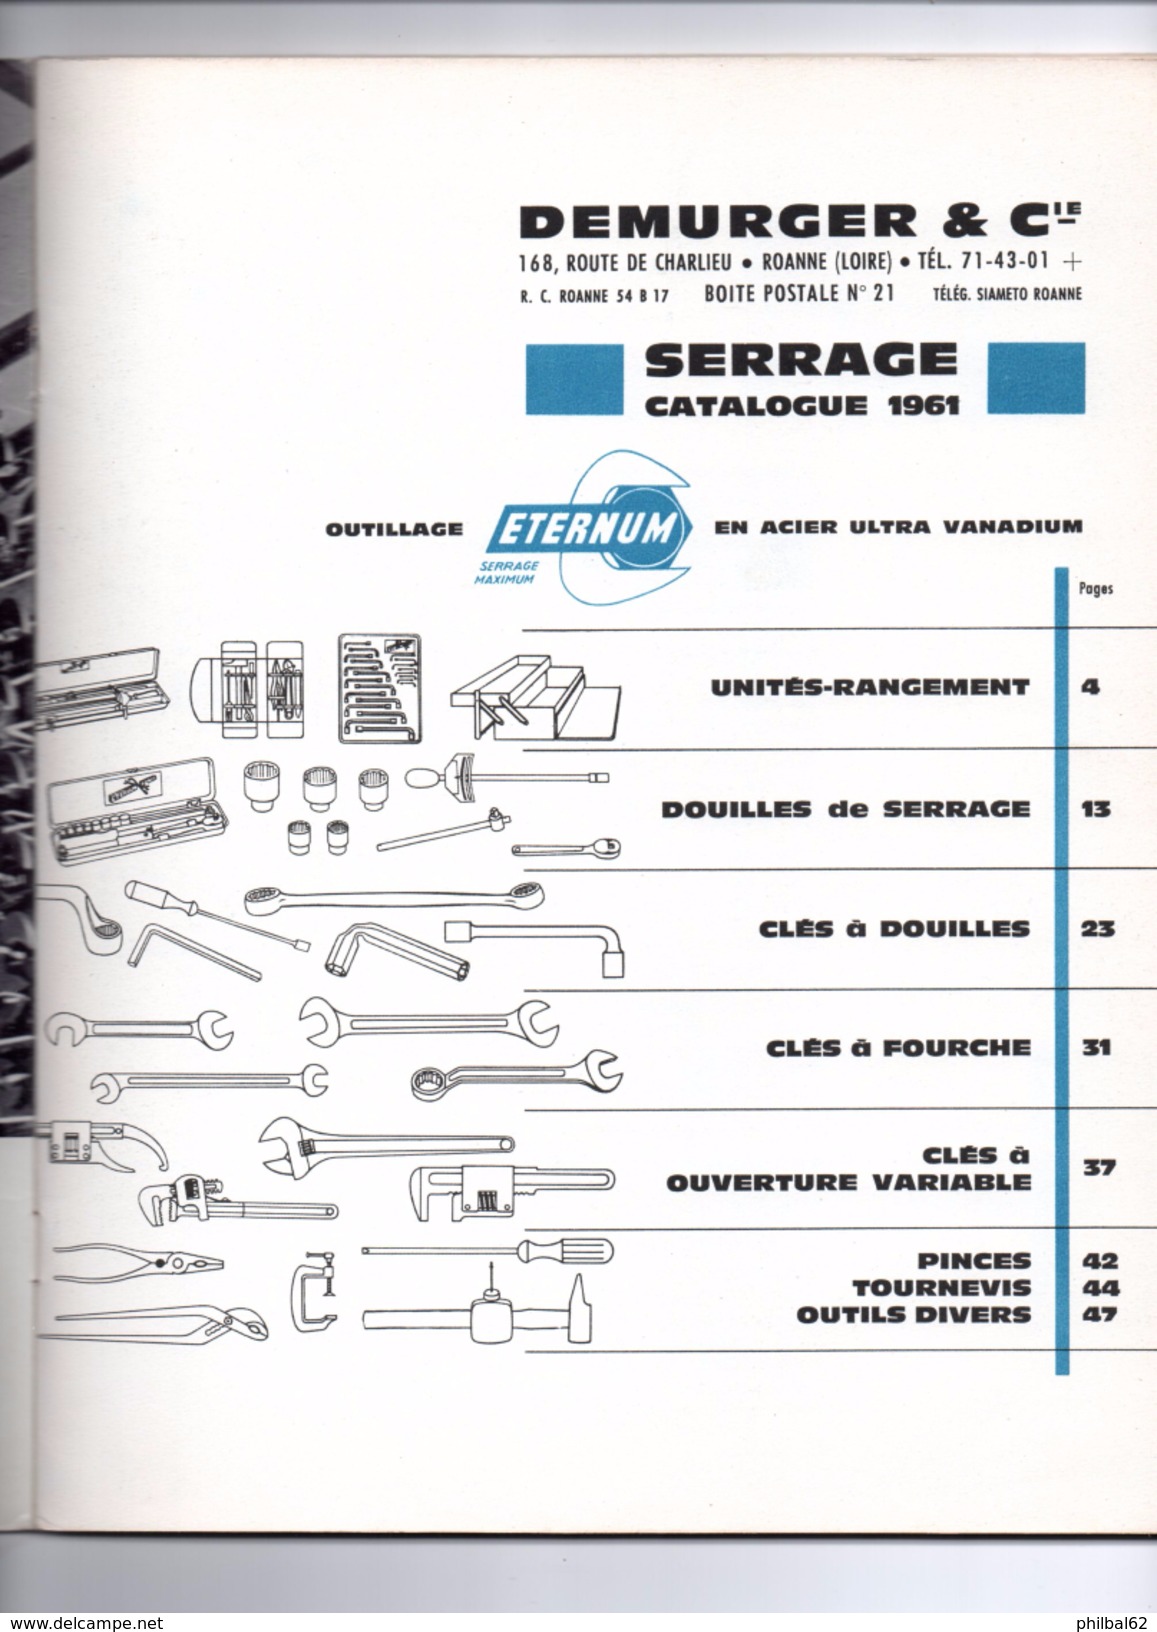 Catalogue De 48 Pages. Année 1964. Outils De Serrage, Clés Diverses, Douilles, Pinces, Tournevis. Demurger à Roanne. - Kataloge